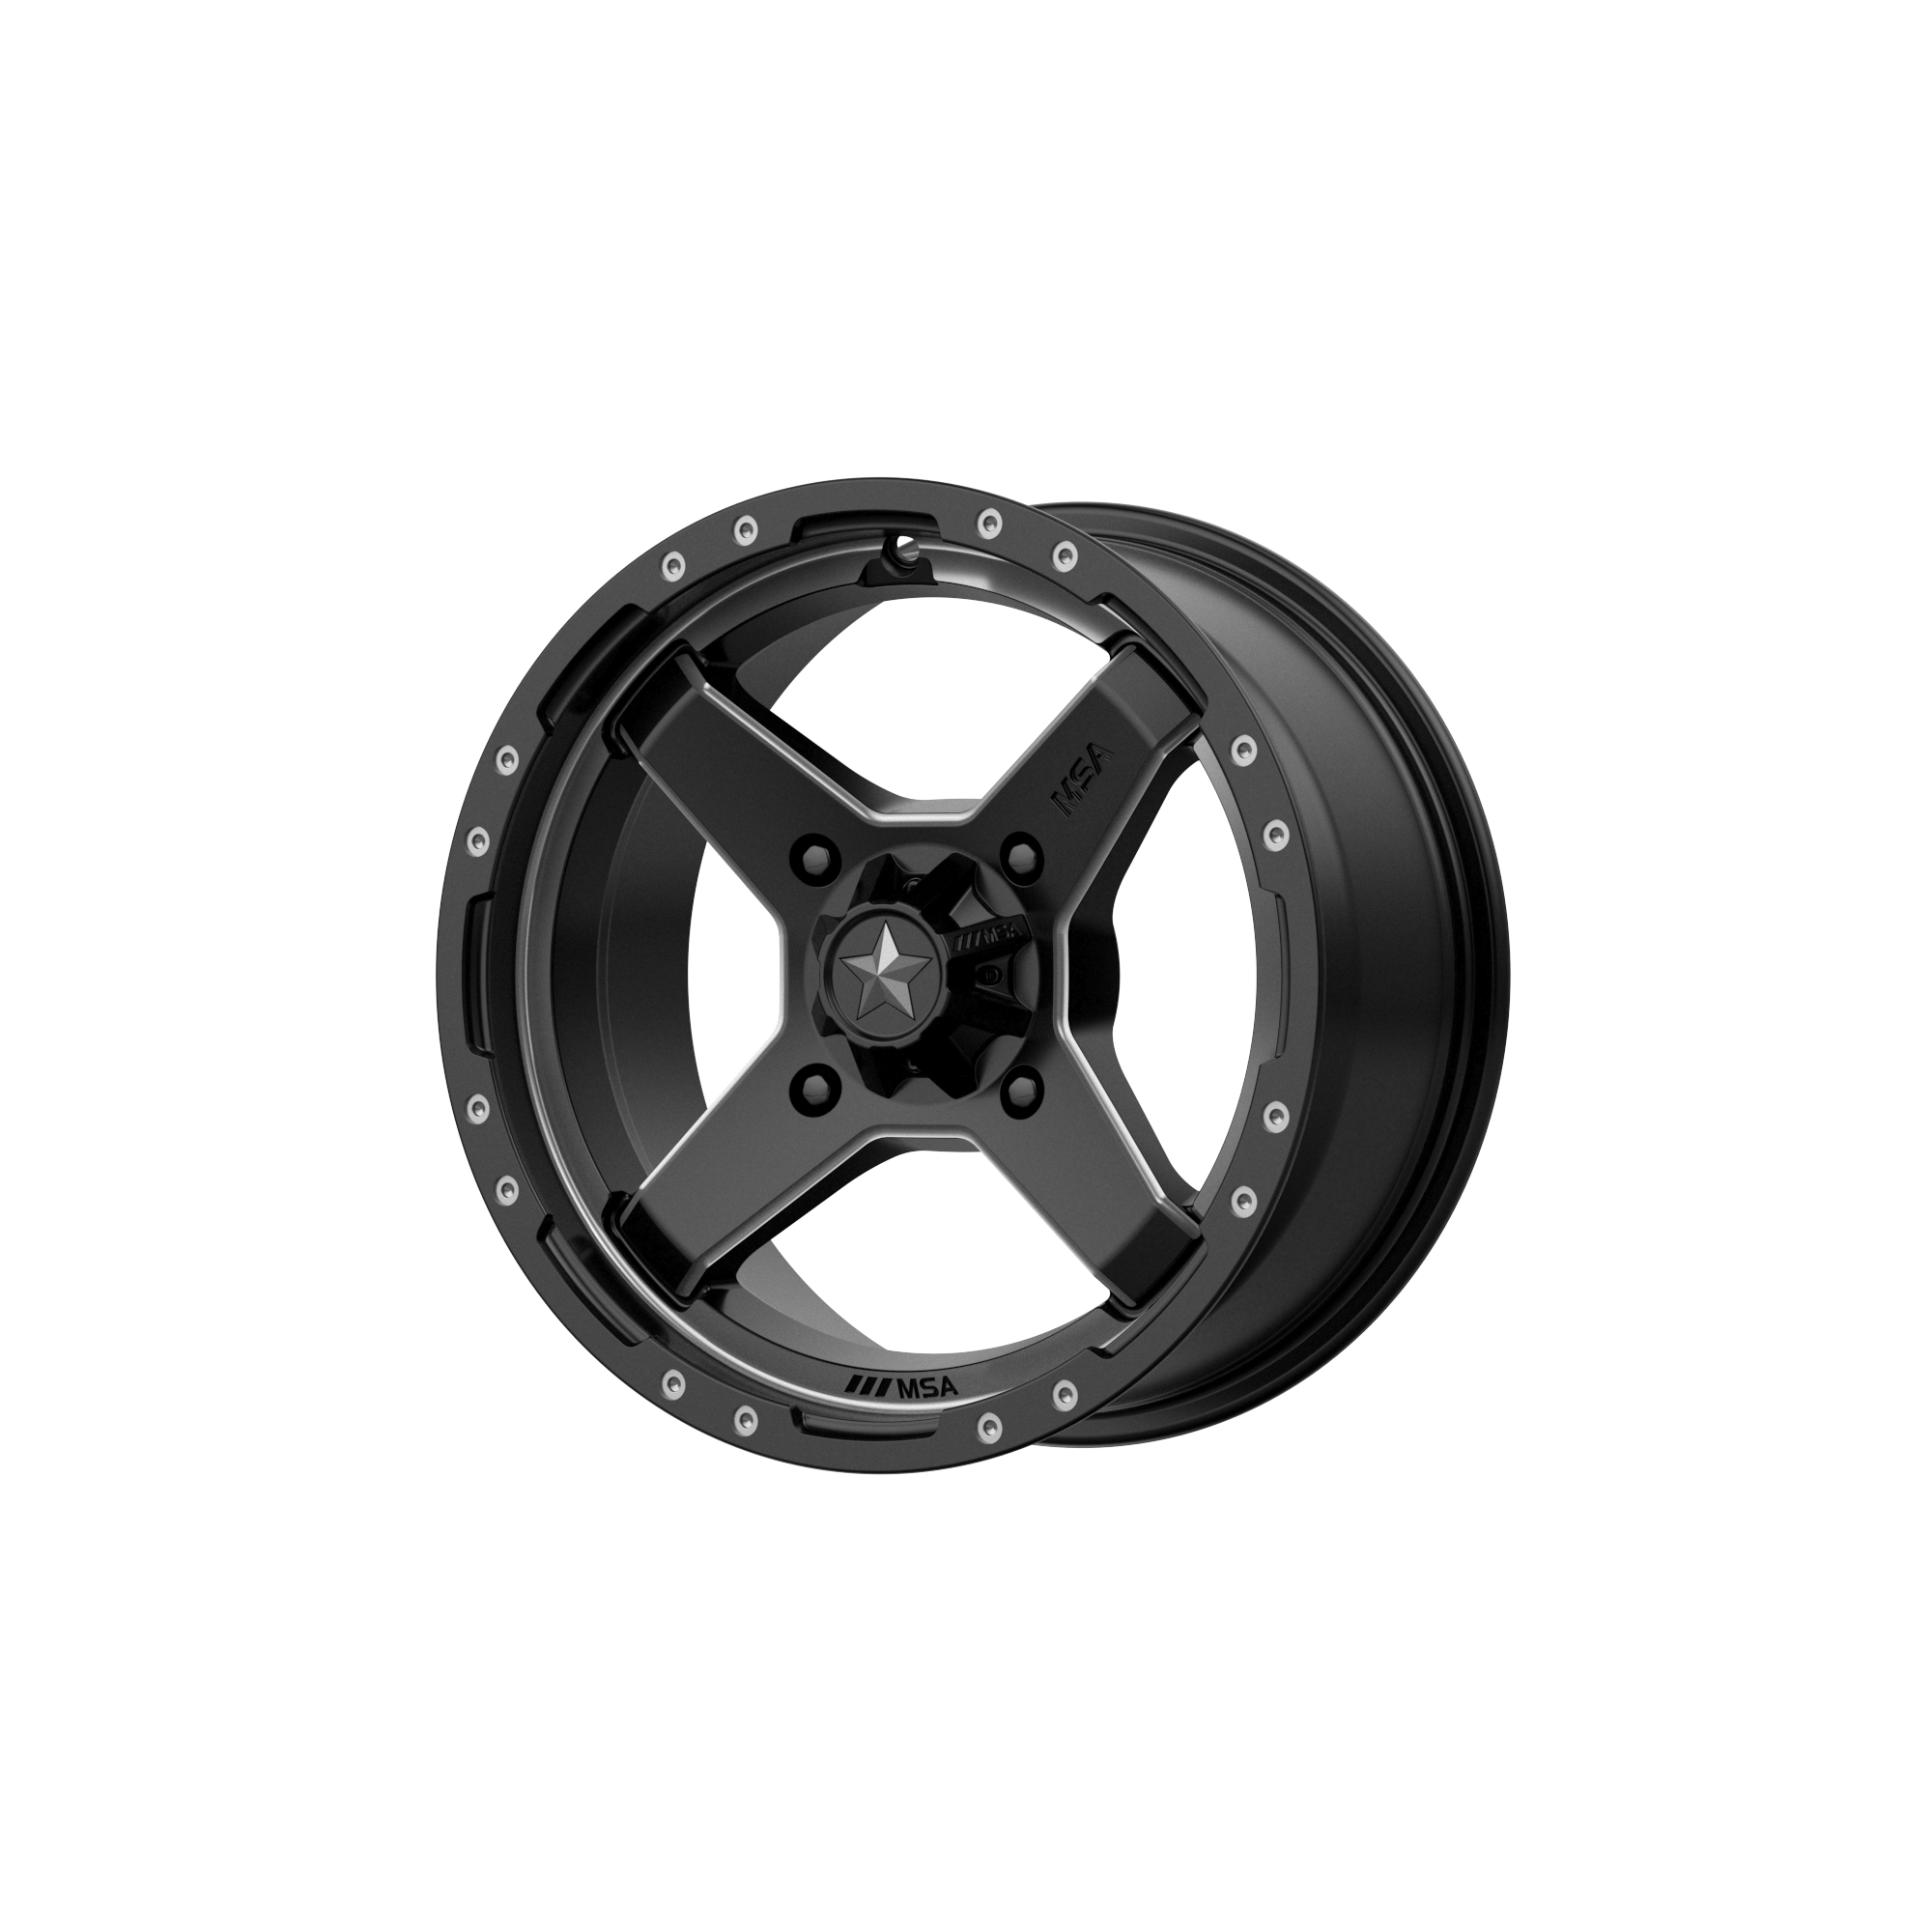 MSA Offroad Wheels M39 CROSS 14x7 10 4x137/4x137 Satin Black Titanium Tint